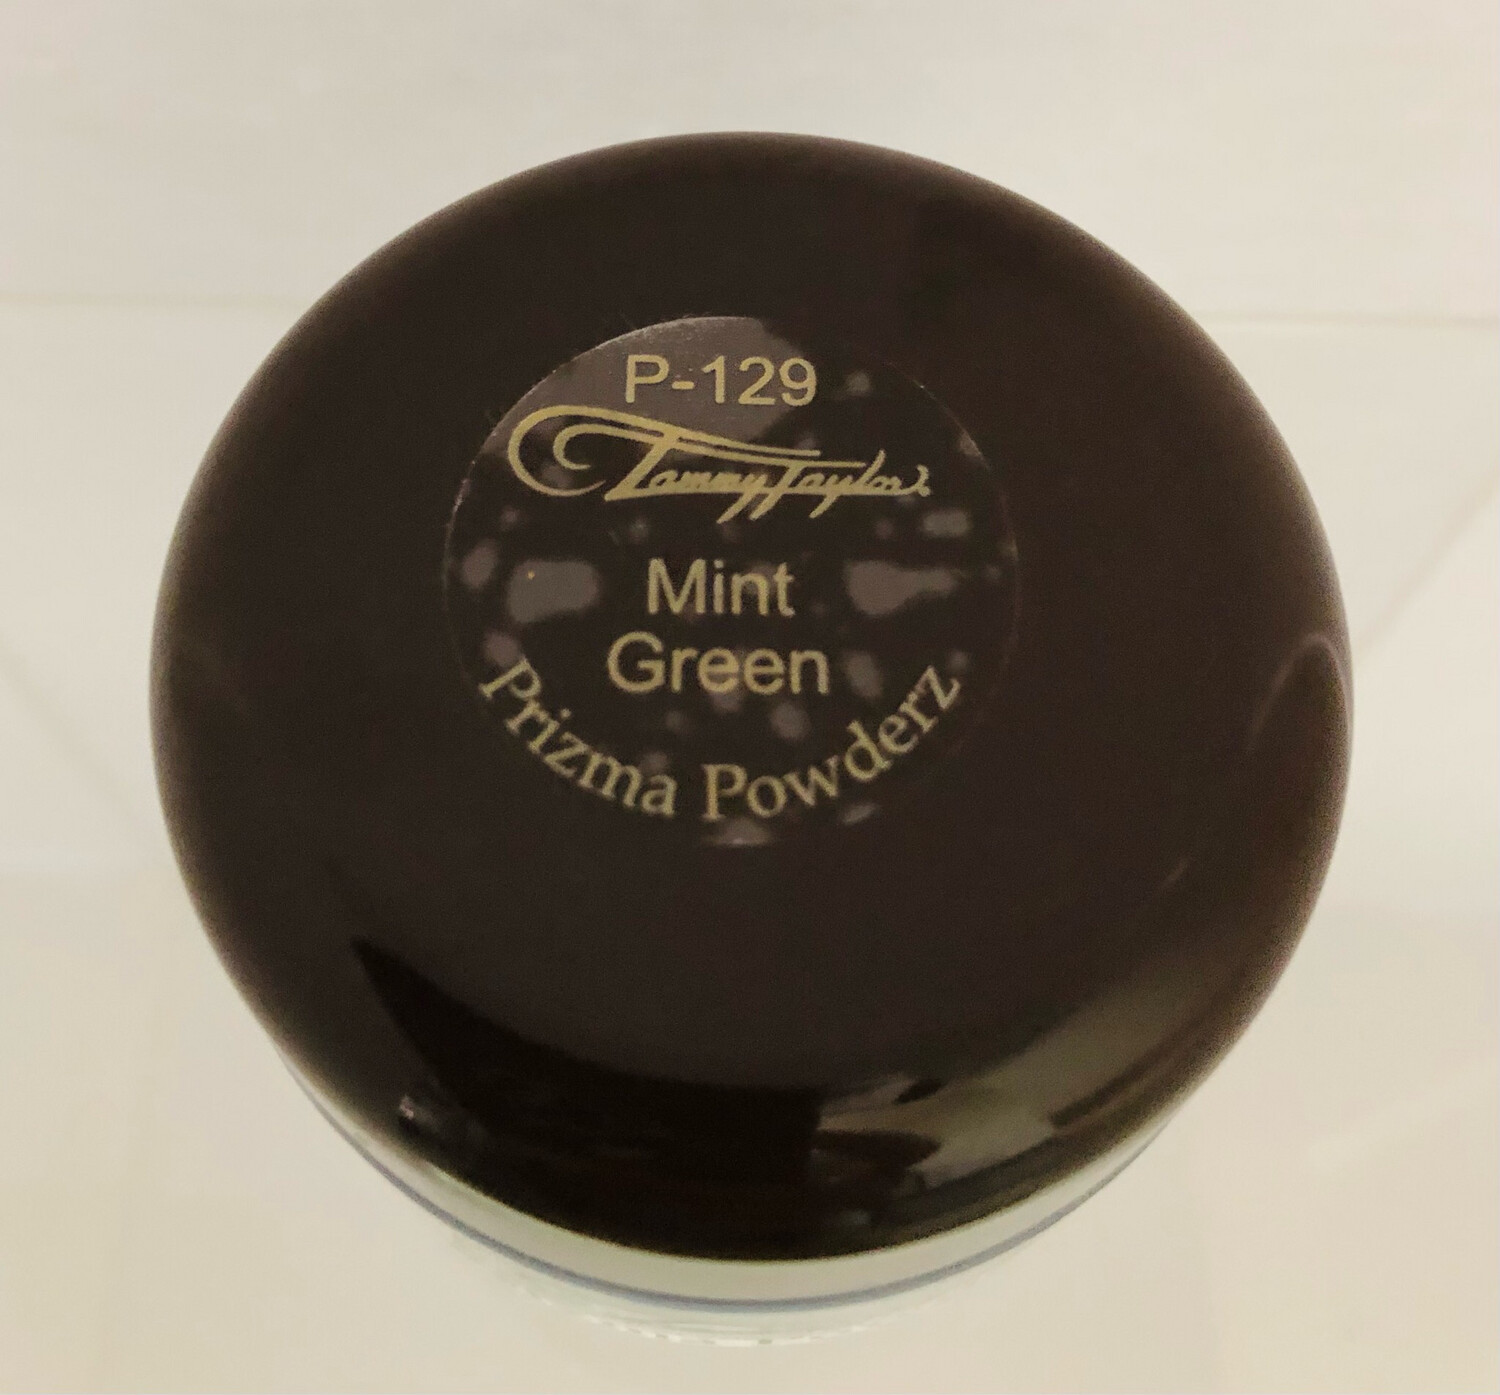 TT Prizma Mint Green 1.5oz P-129